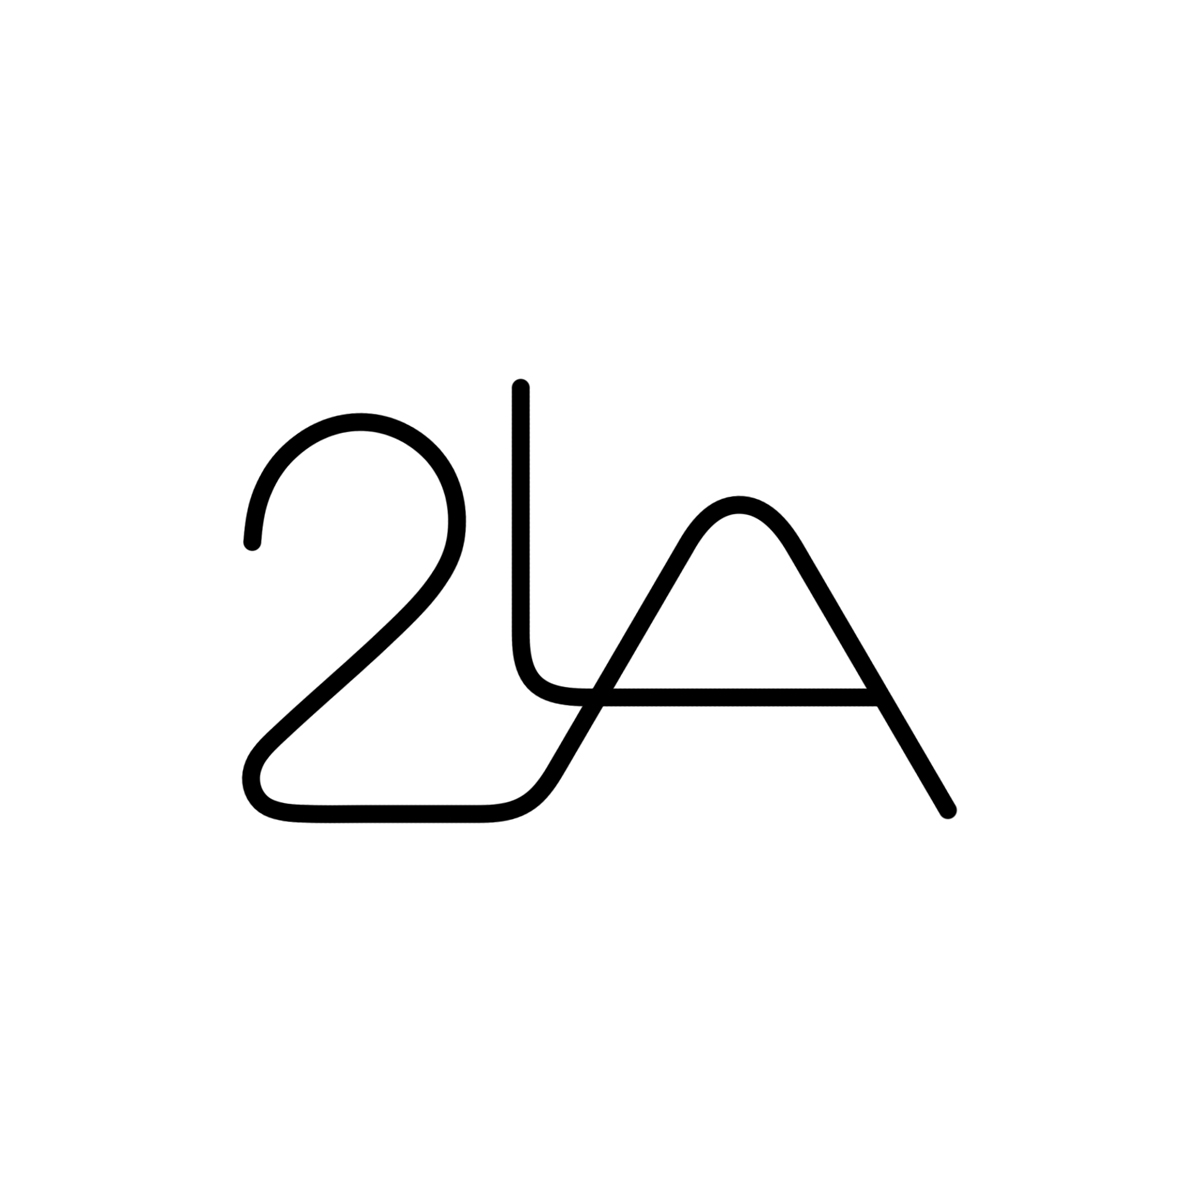 2-LA Design